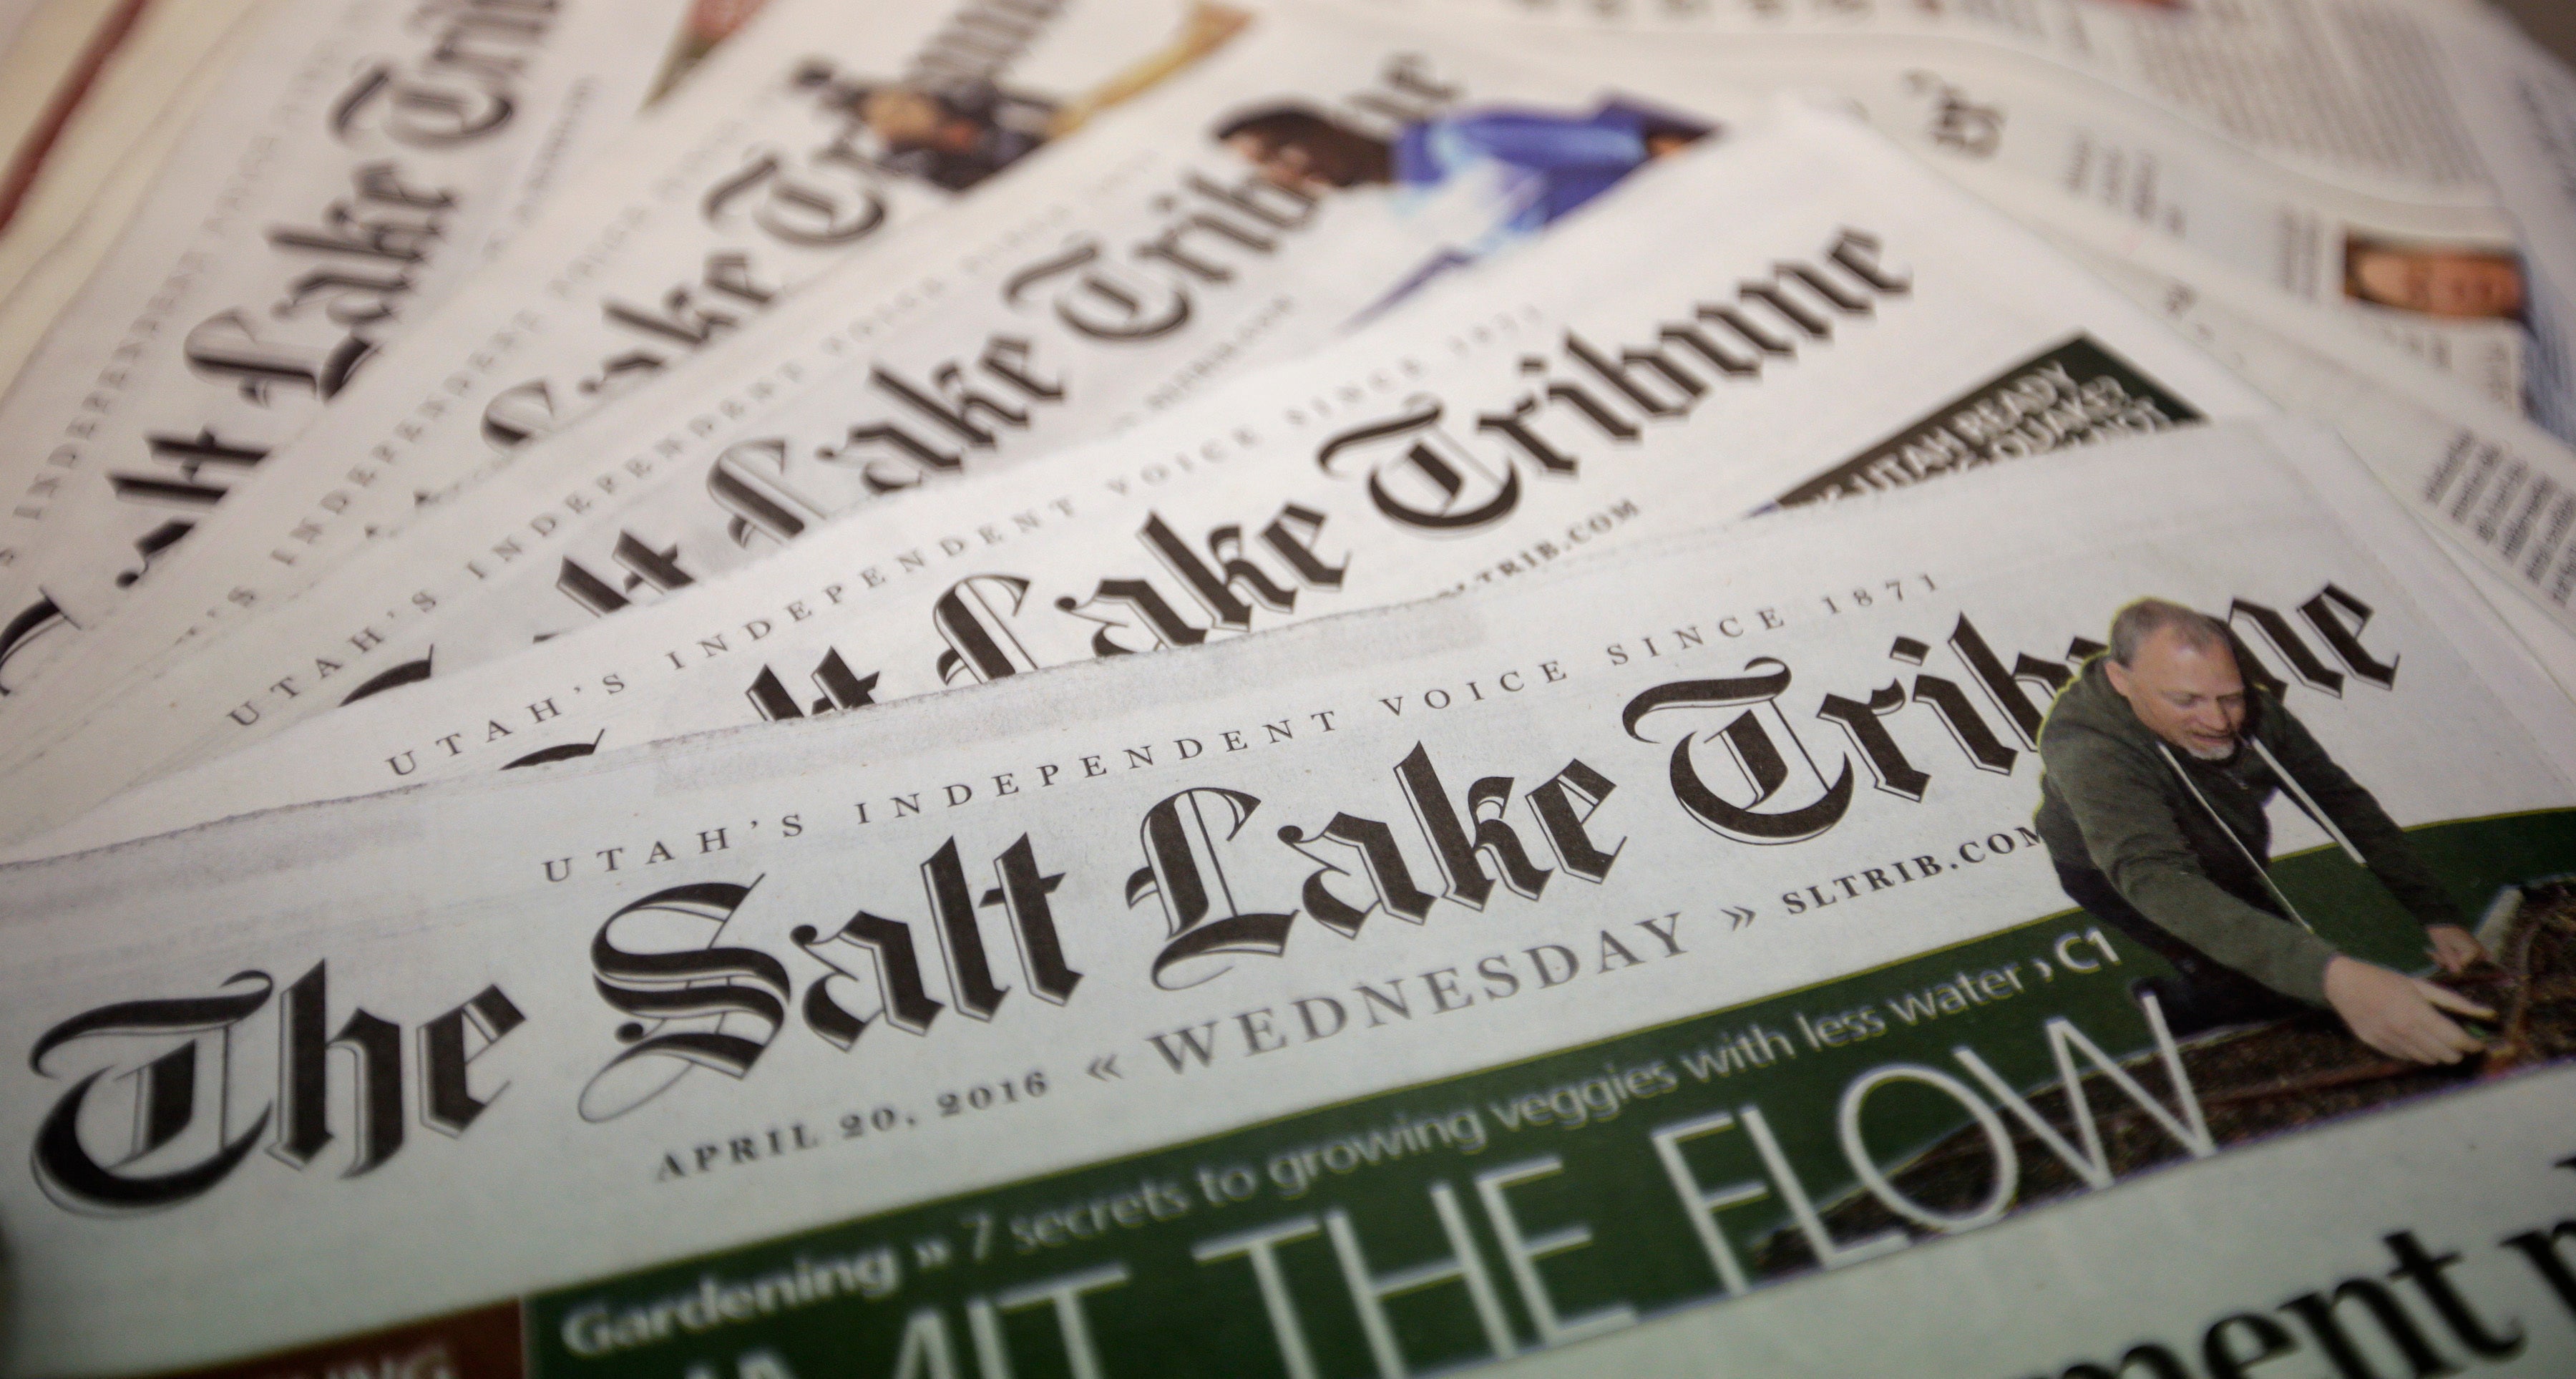 Newspaper Print Cuts Utah